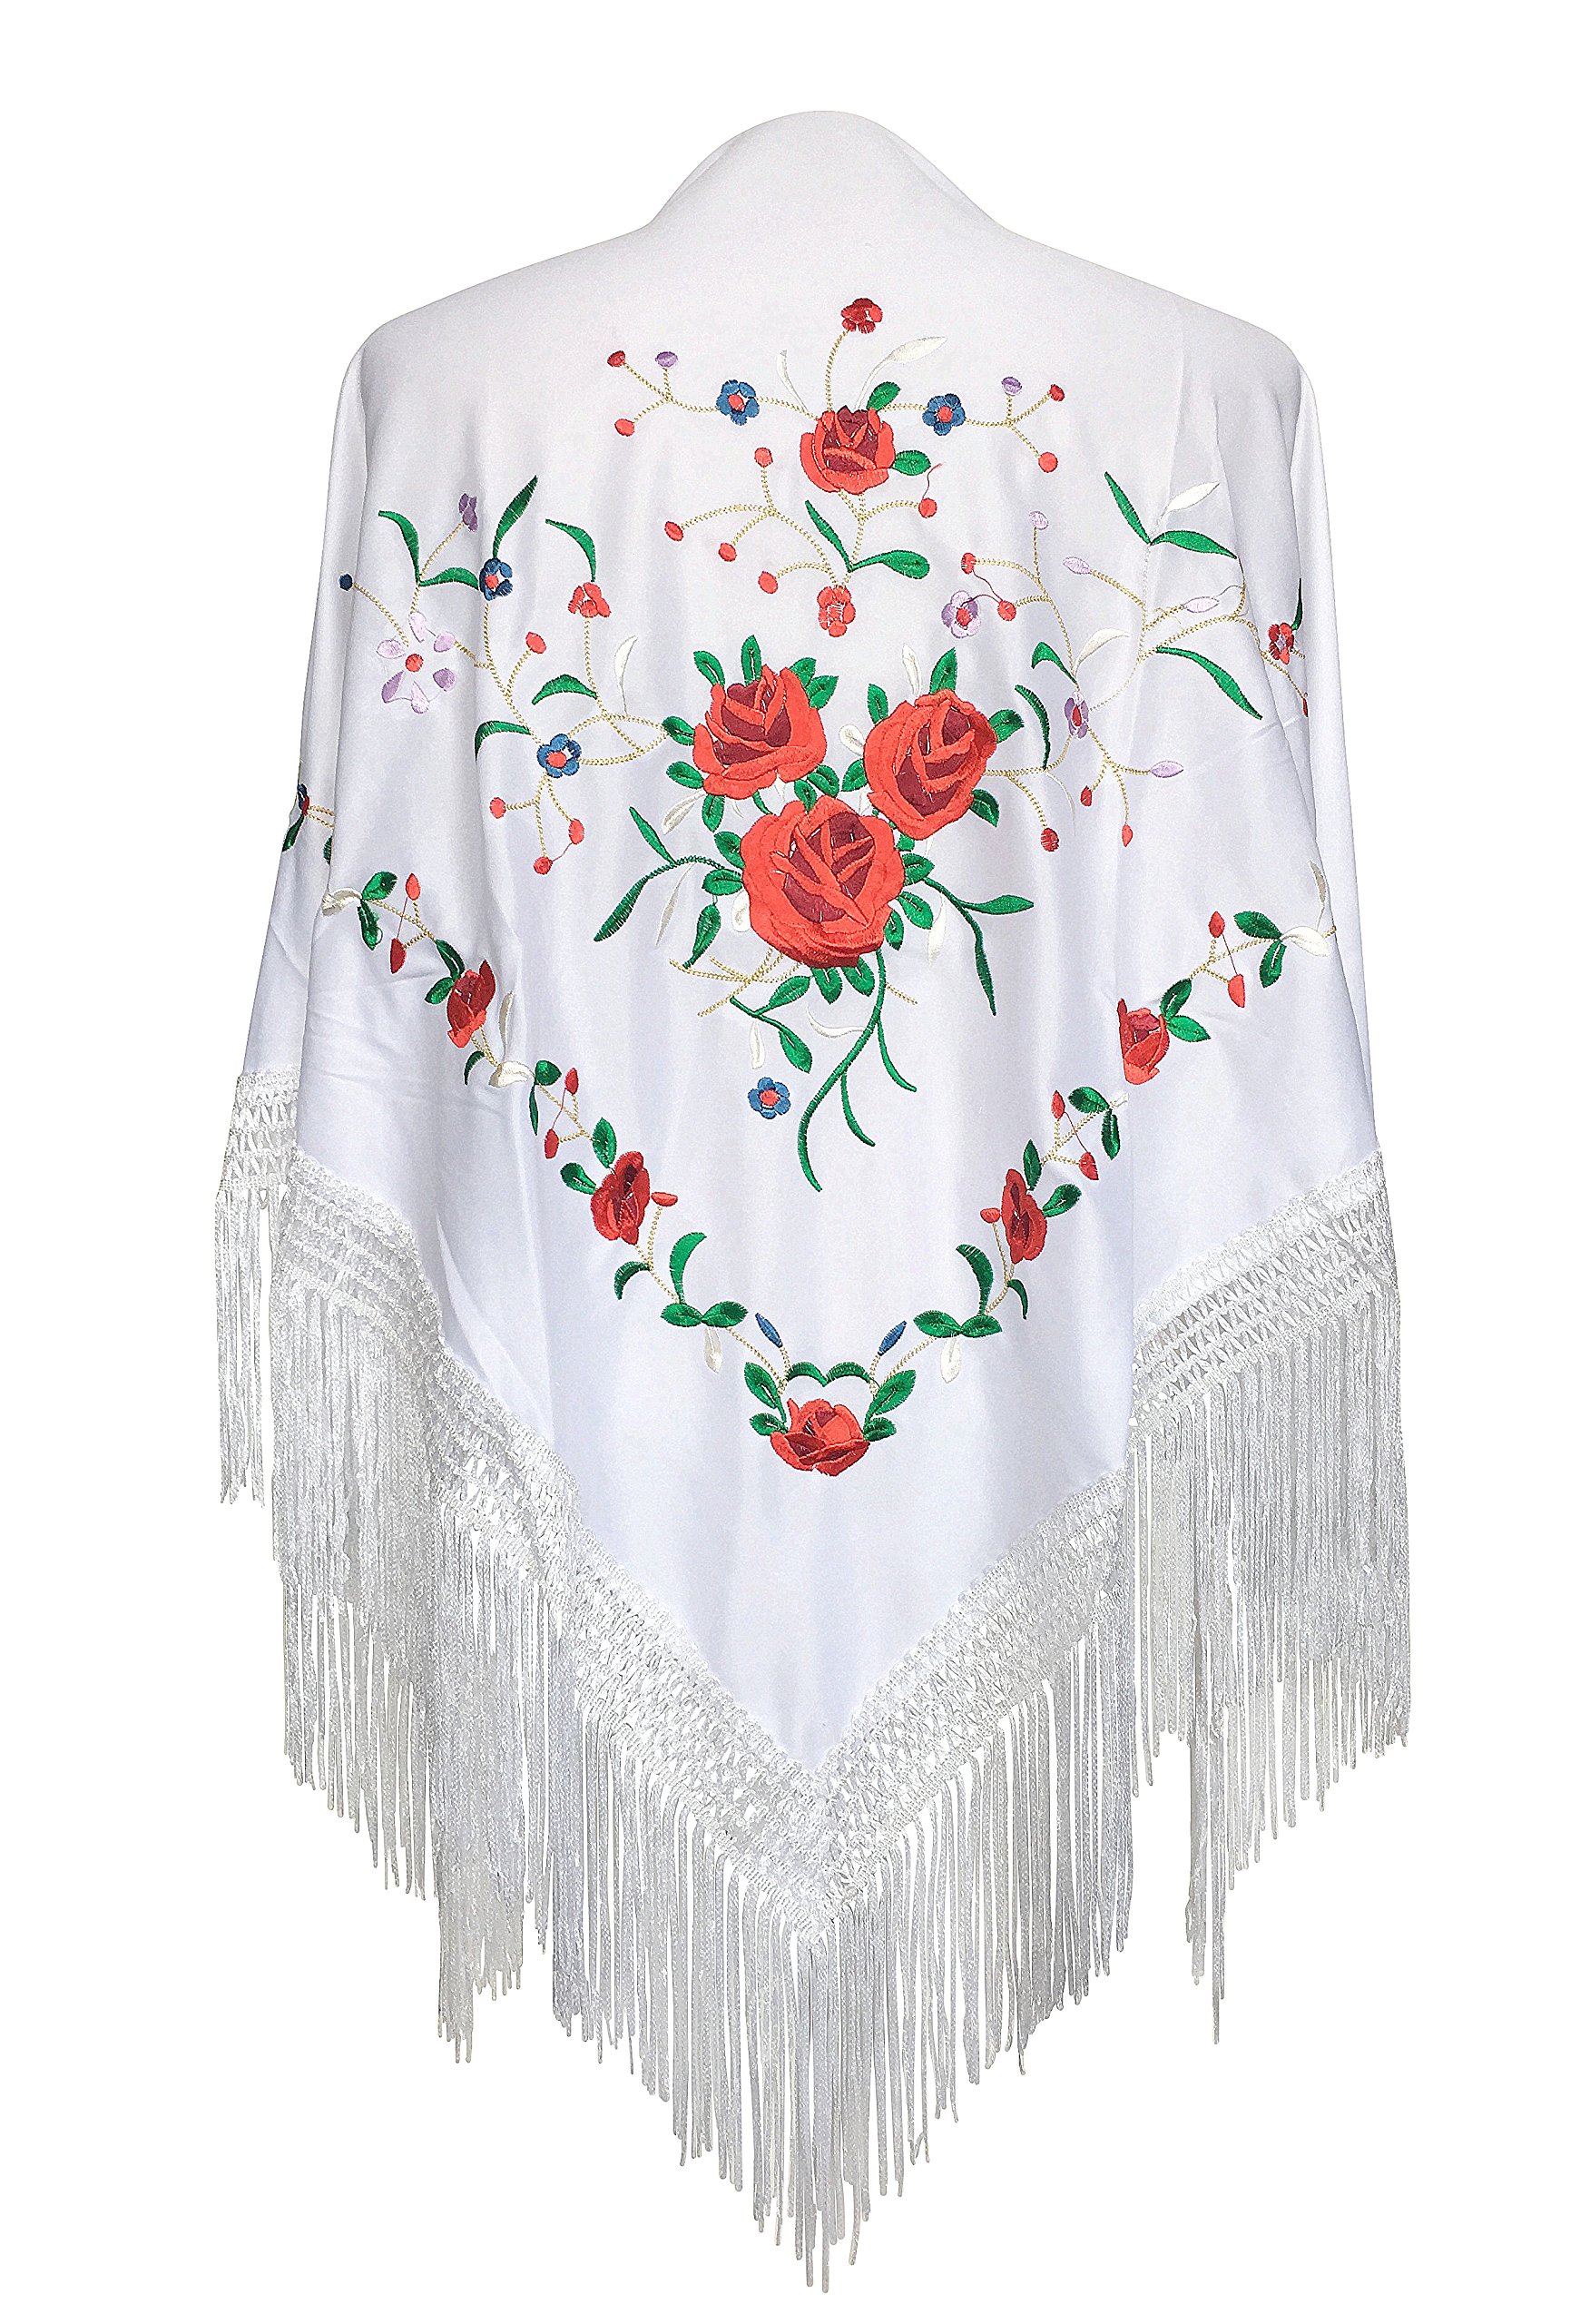 La Senorita Spanischer Manton Tuch Schal bestickt. Flamenco-Tücher für das Fair-, Sevillana- oder Flamenco-Kleid. [160 x 80 cm] Ideale Größe für alle Altersgruppen [Mädchen & Frauen]